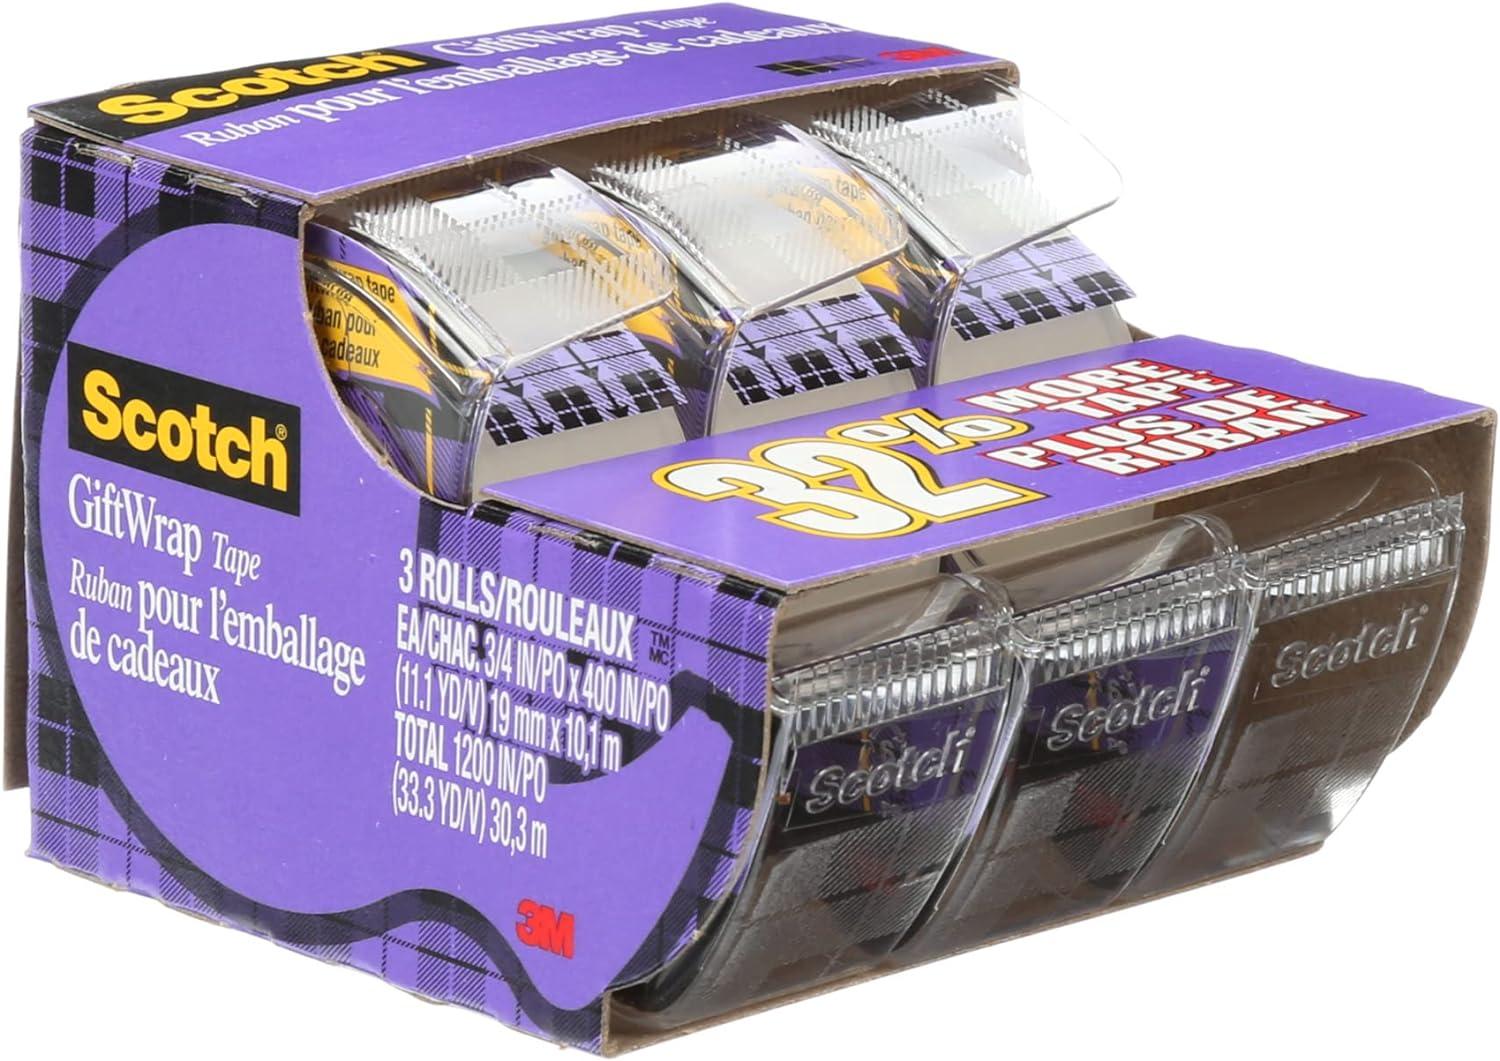 scotch tape gift wrap tape 19mm wide x 10 1m 3 rolls in dispensers  scotch b00enfqfa2